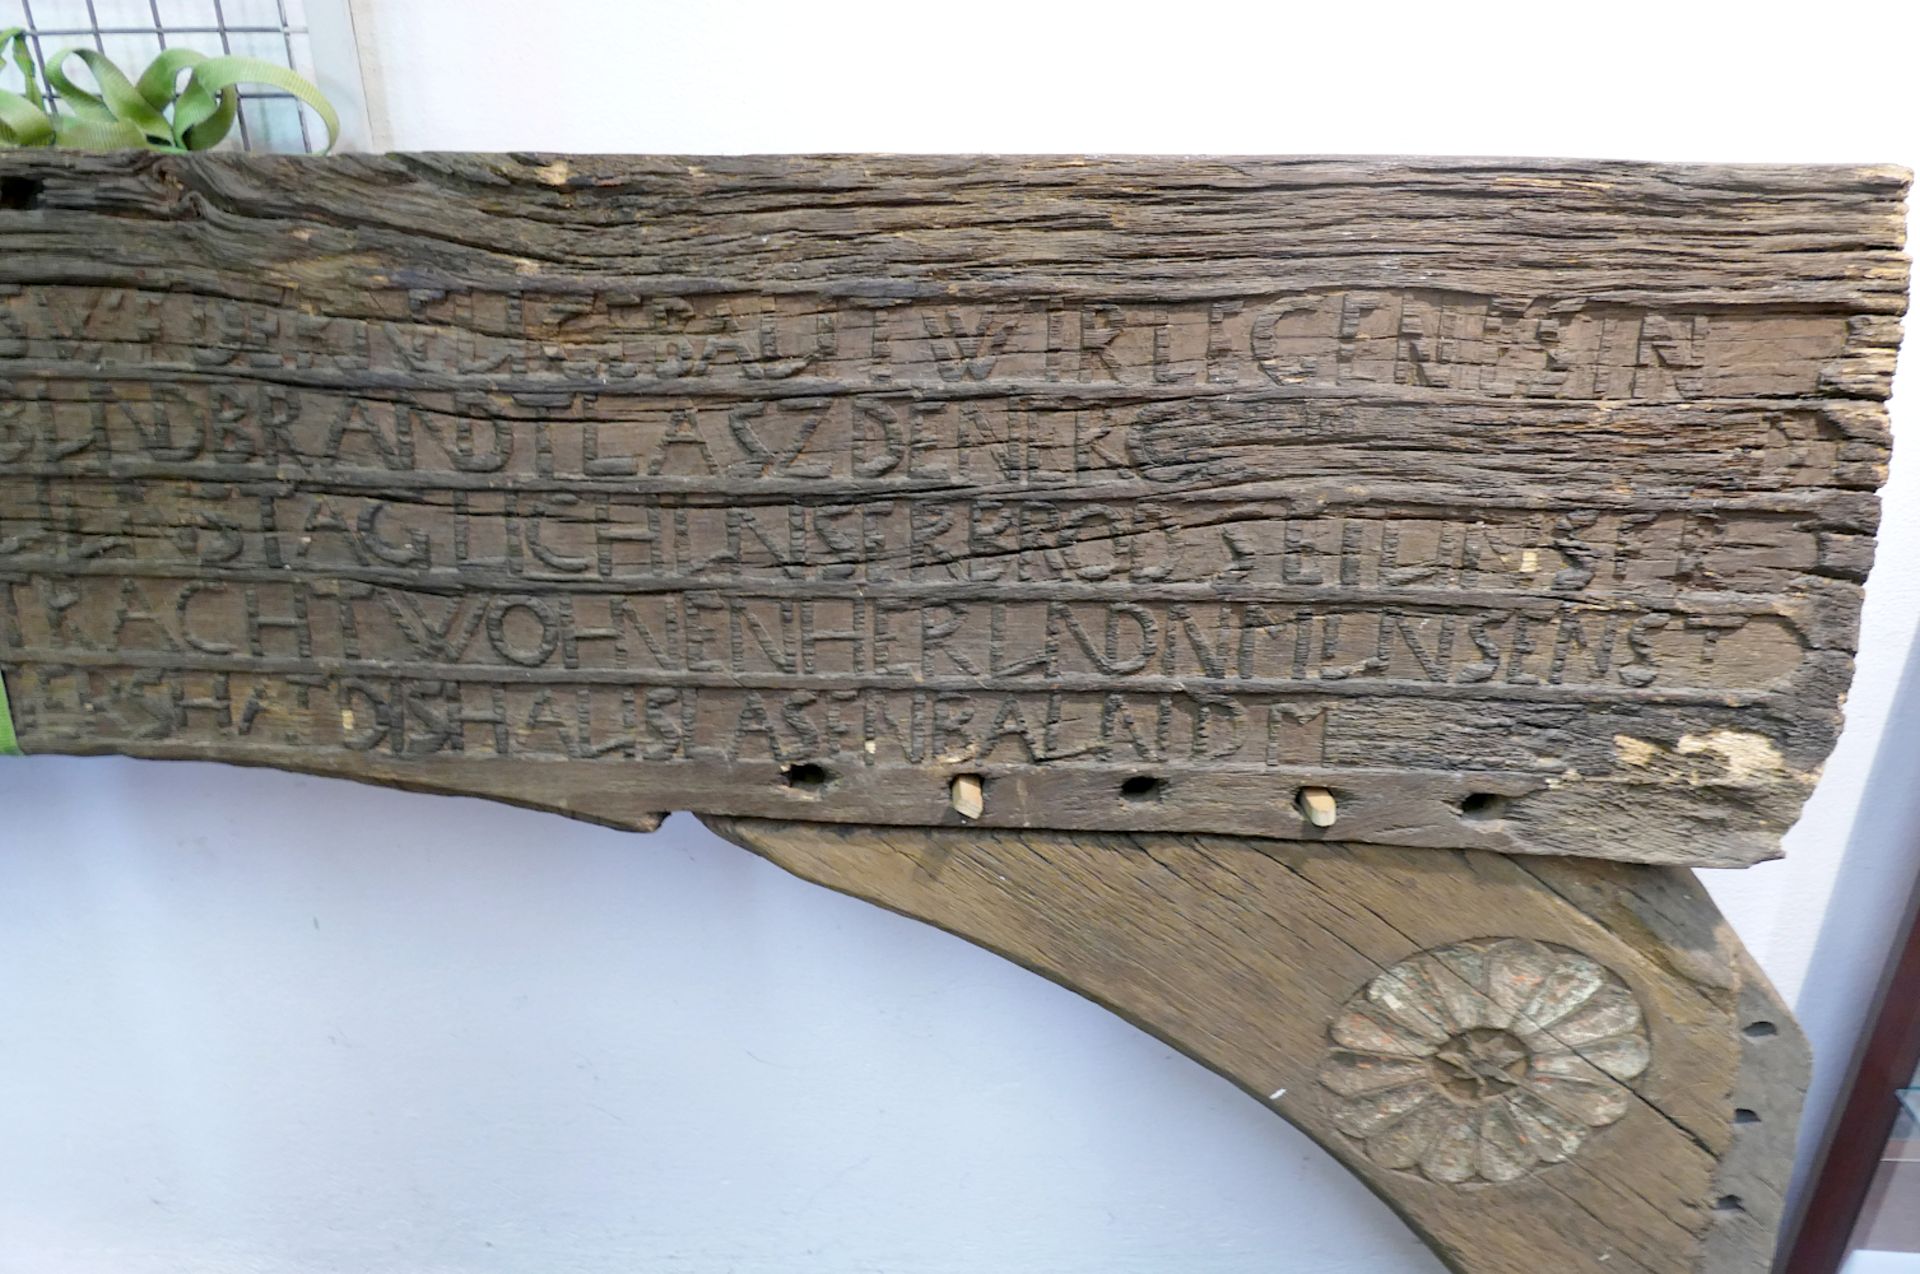 1 Torbogen Holz wohl 17./18. Jh., Inschriften, Gr. ca. 264x133x15 cm, Verzierungen, starke Asp. - Bild 3 aus 5